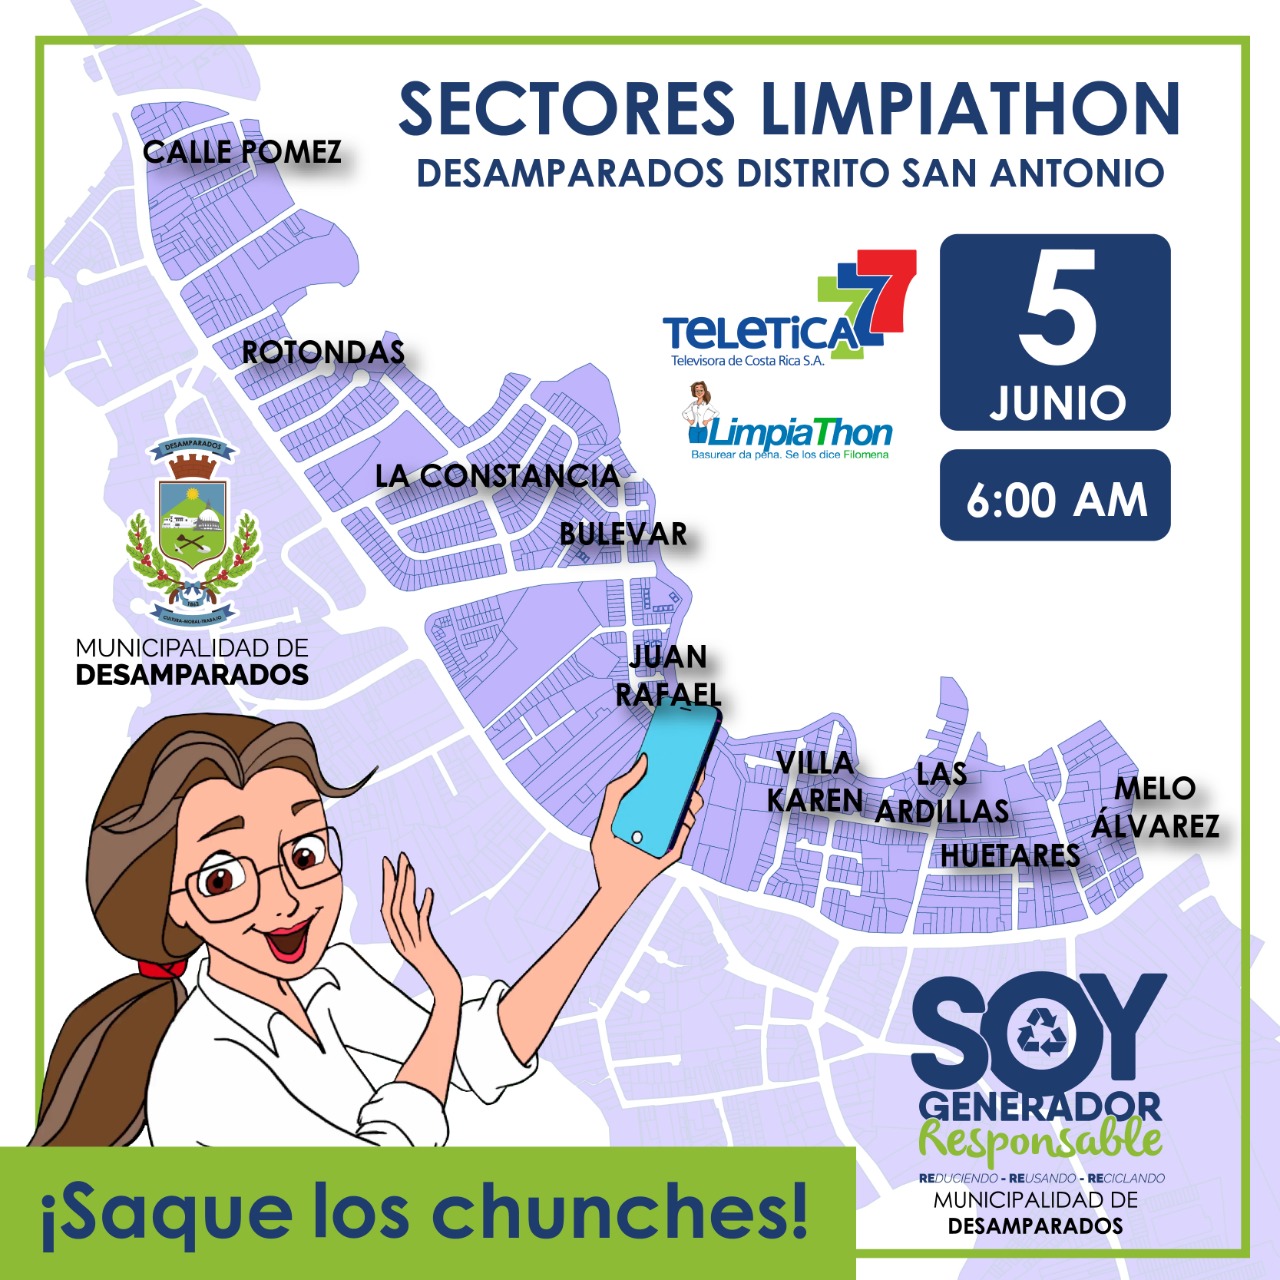 Arte promocional de la campaña "Saque los chunches" para el 5 de junio del 2022 a partir de las 6:00am. Se muestra al personaje Filomena sobre el mapa del distrito de San Antonio de Desamparados